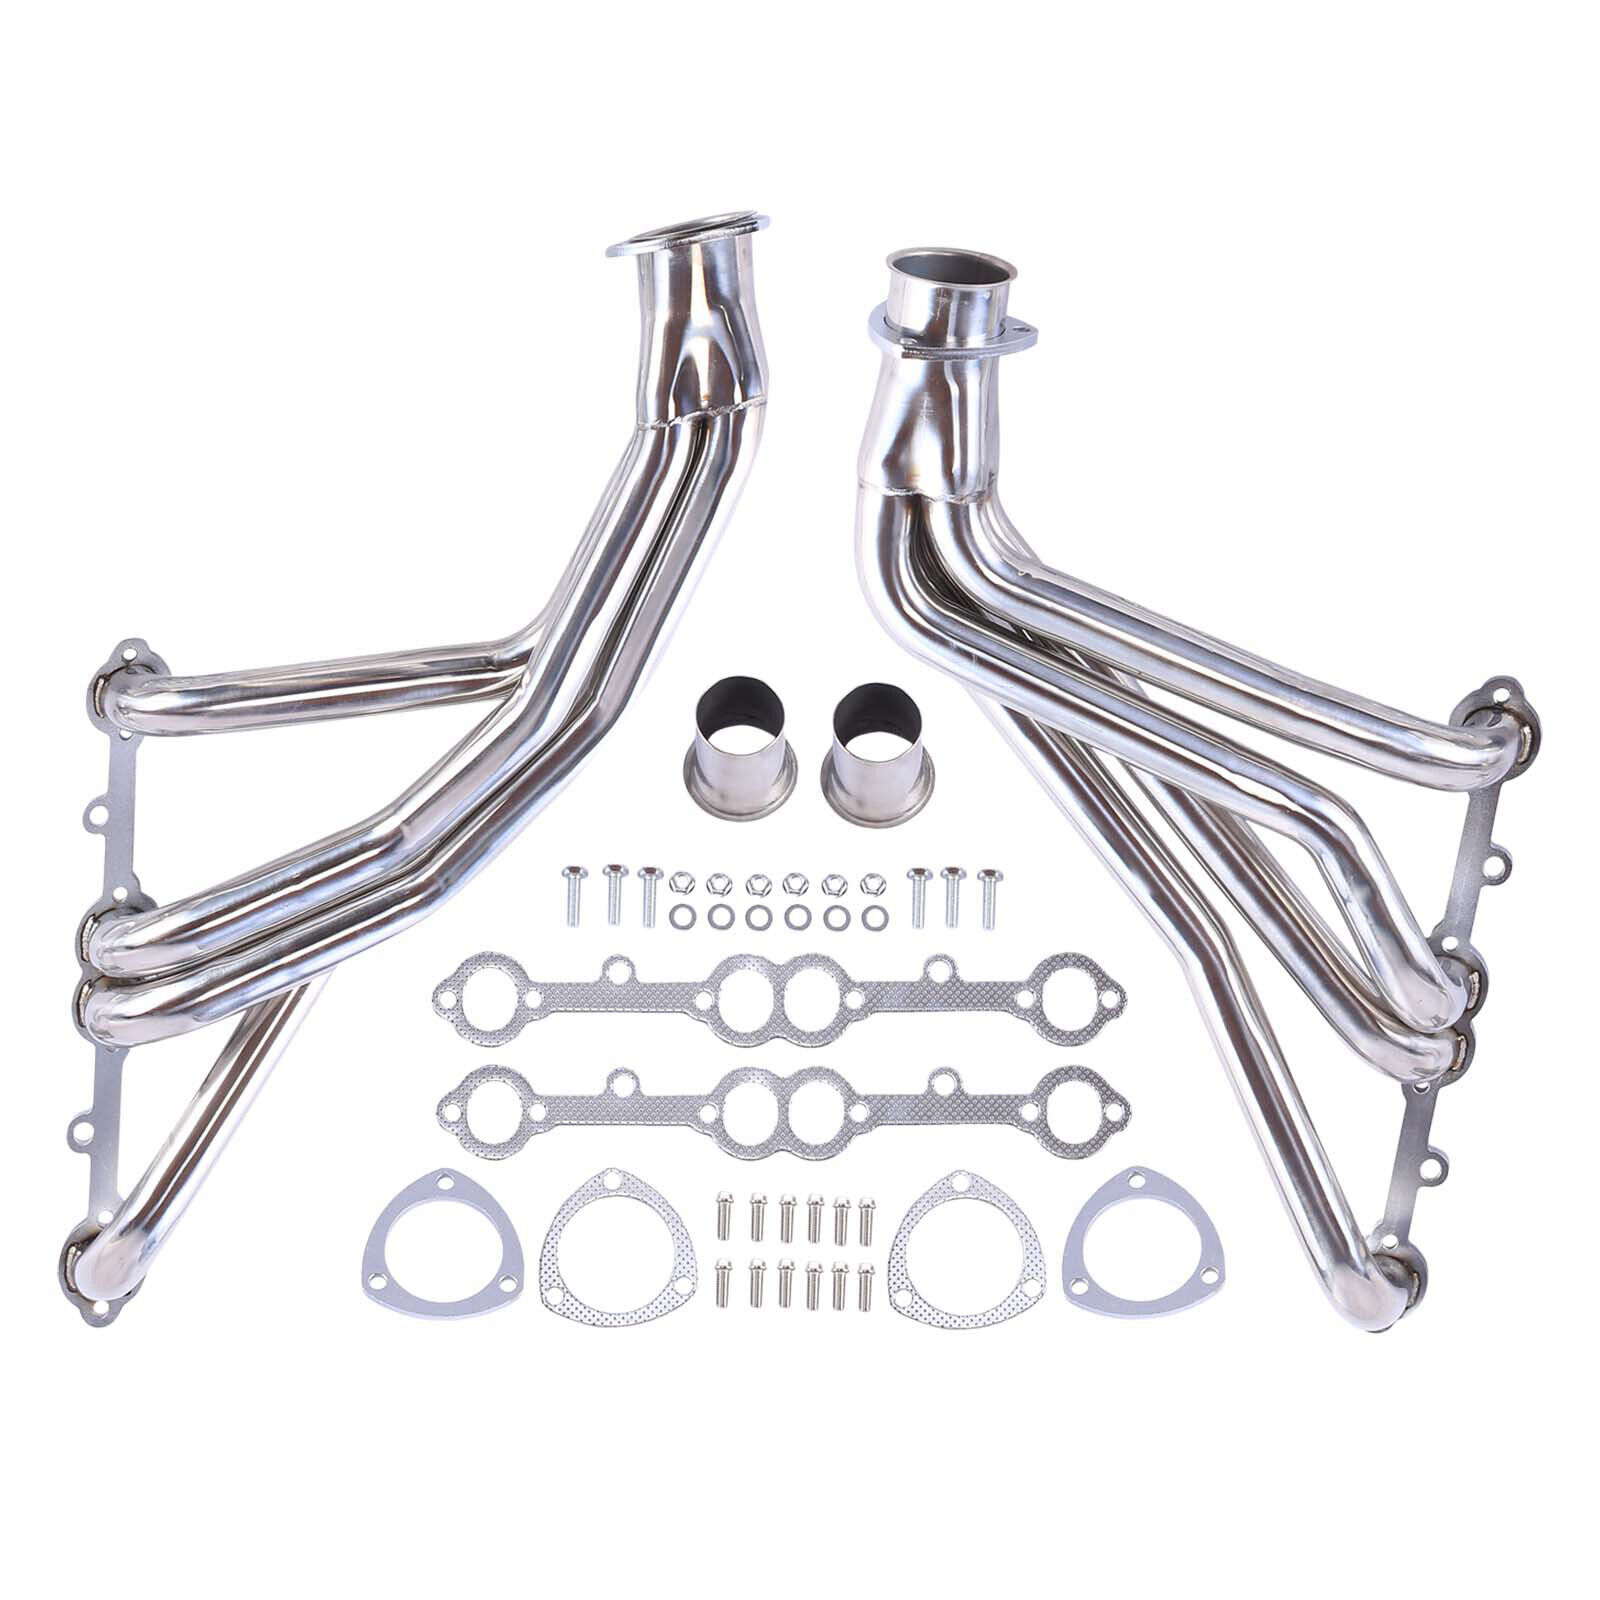 Stainless Steel Headers Manifold For Chevy Corvette C2 C3 1963-82 V8 305 327 350